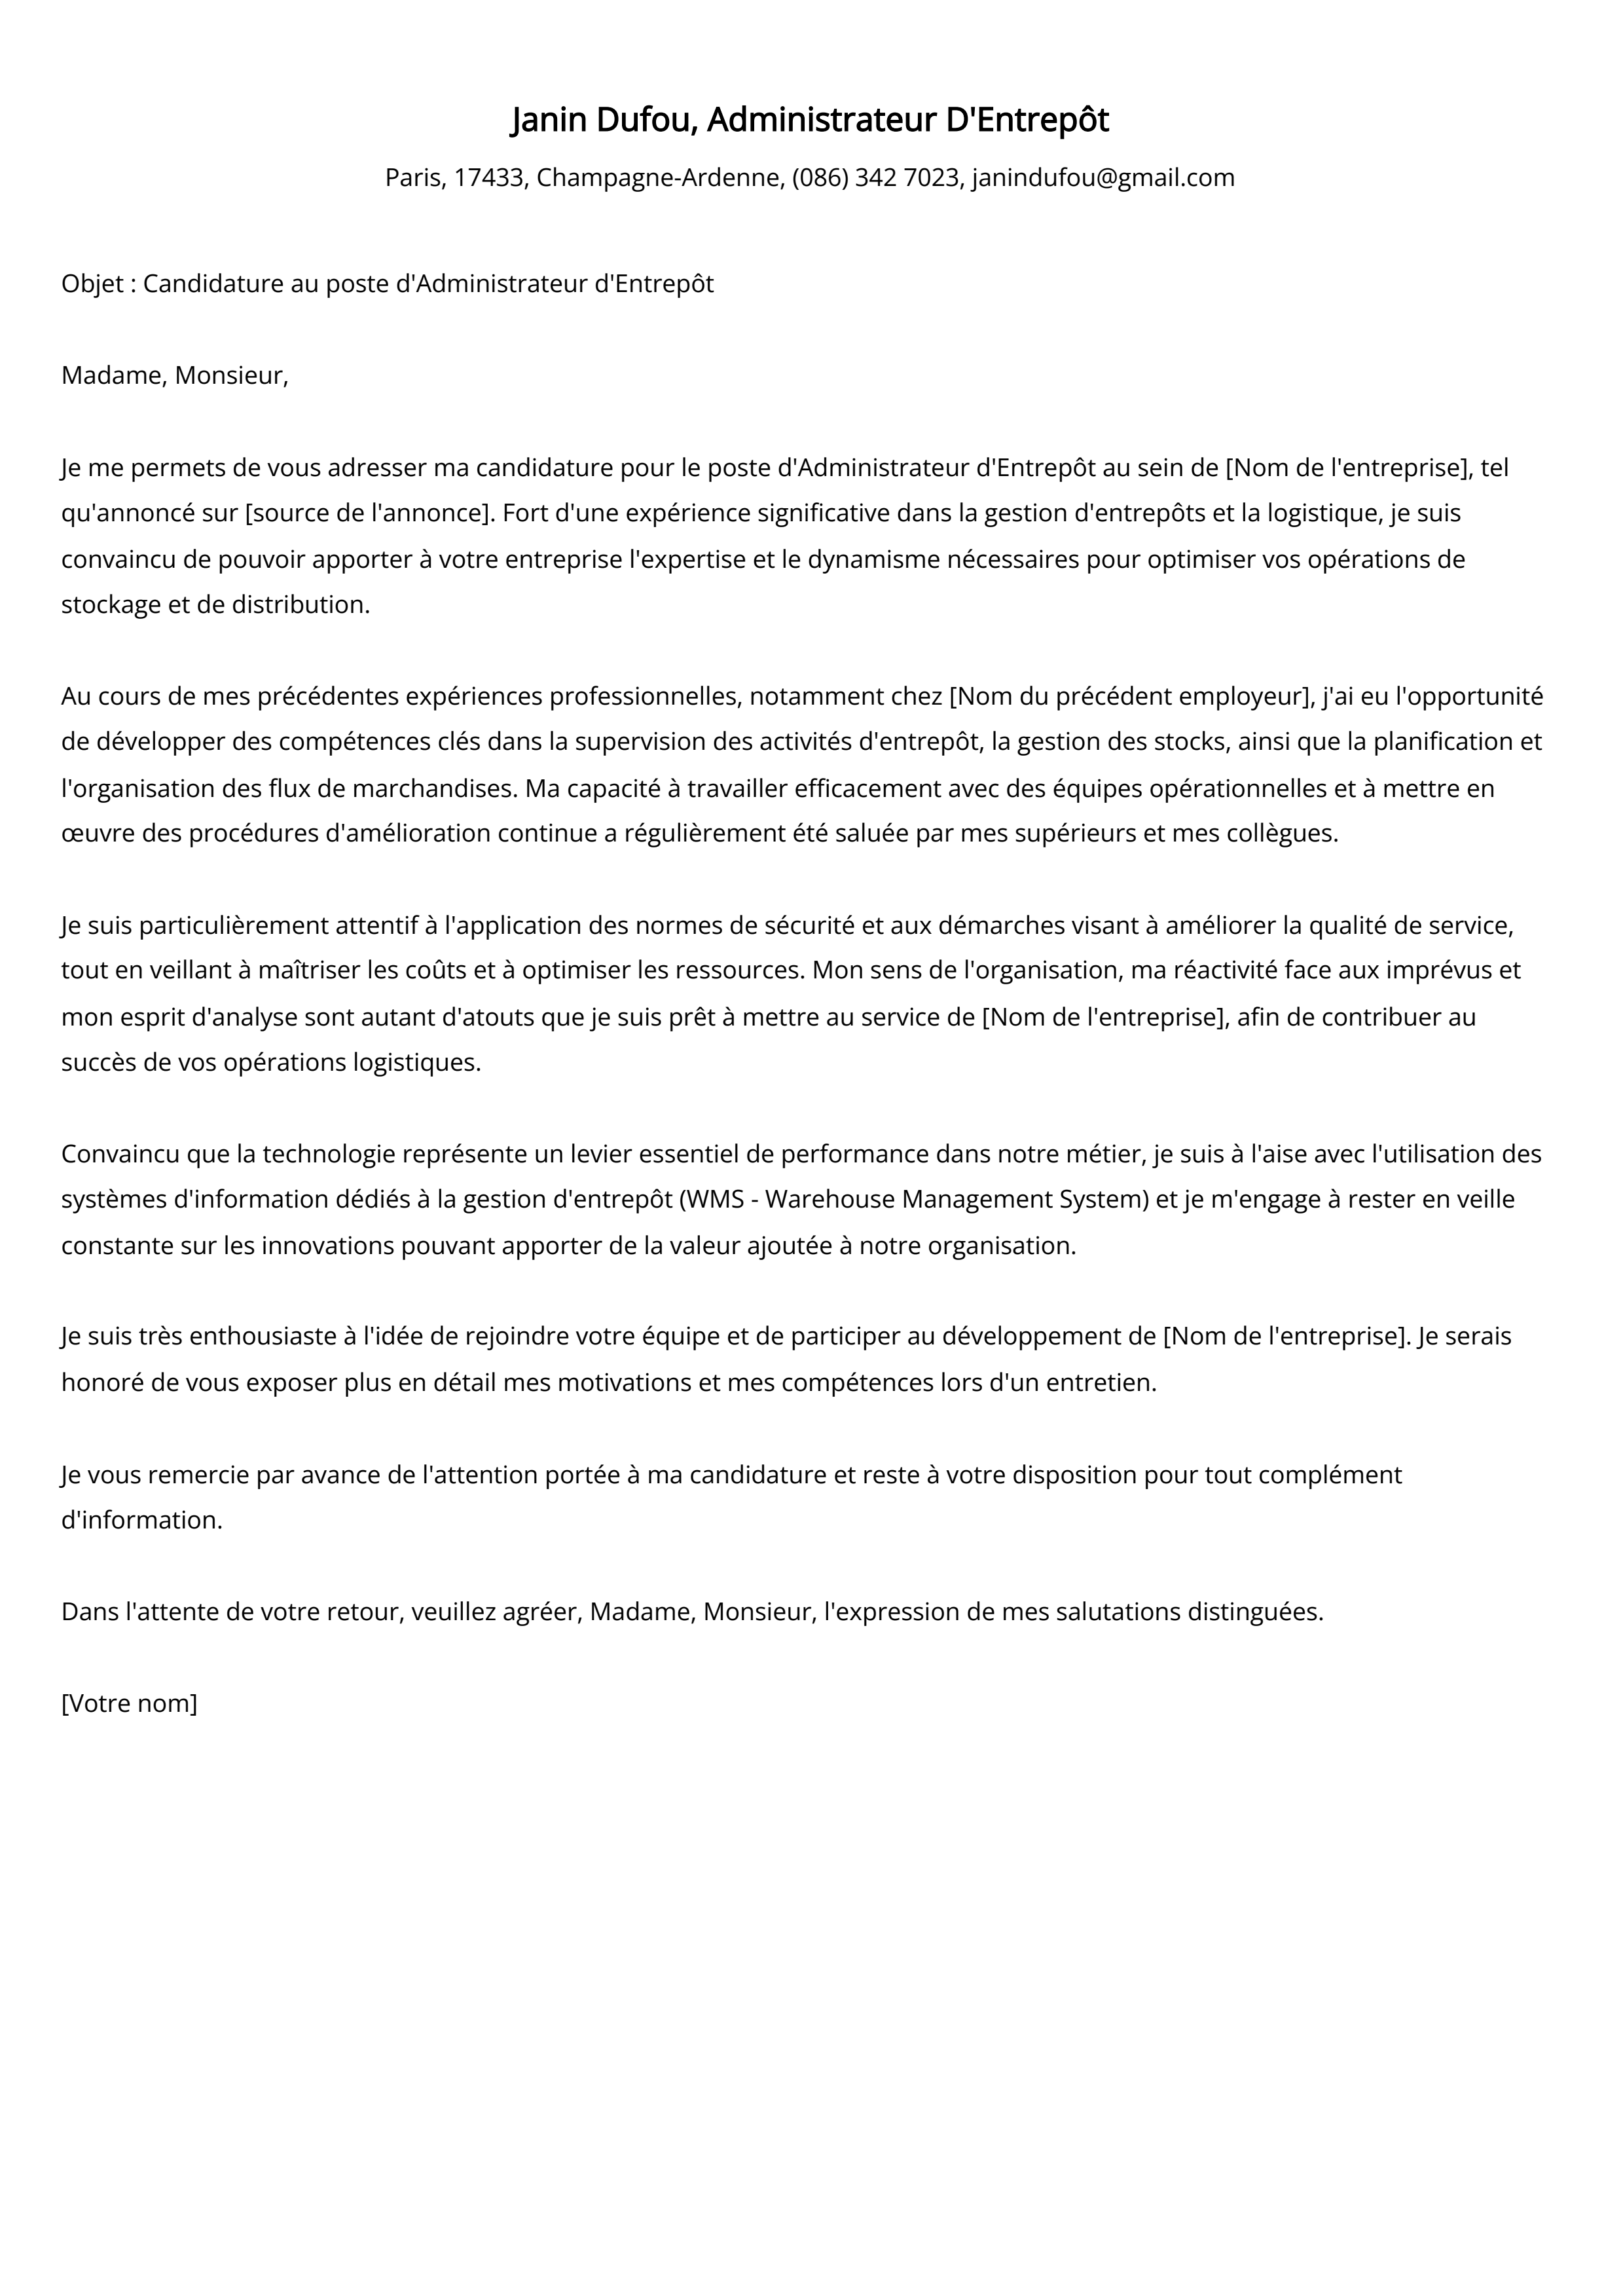 Administrateur D'Entrepôt Cover Letter Example